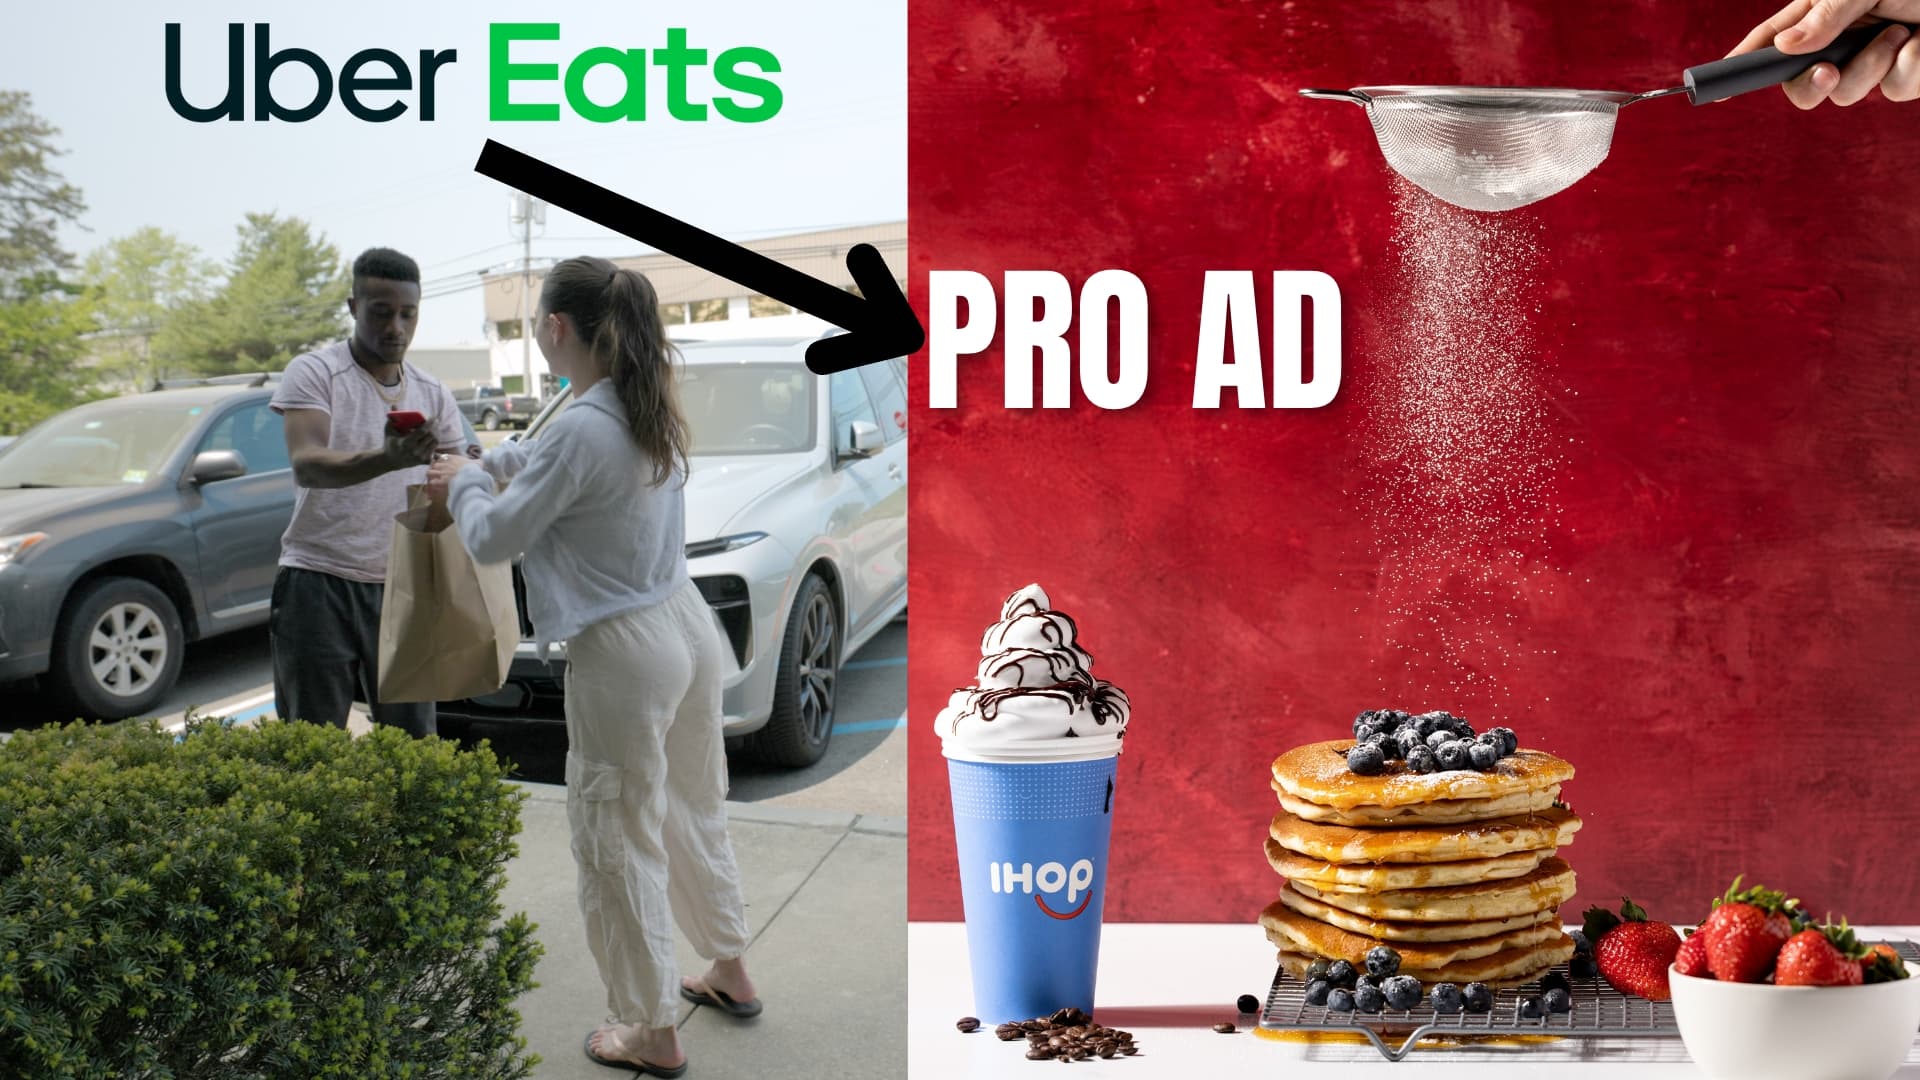 IHOP Uber Eats professional food photography advertisement.